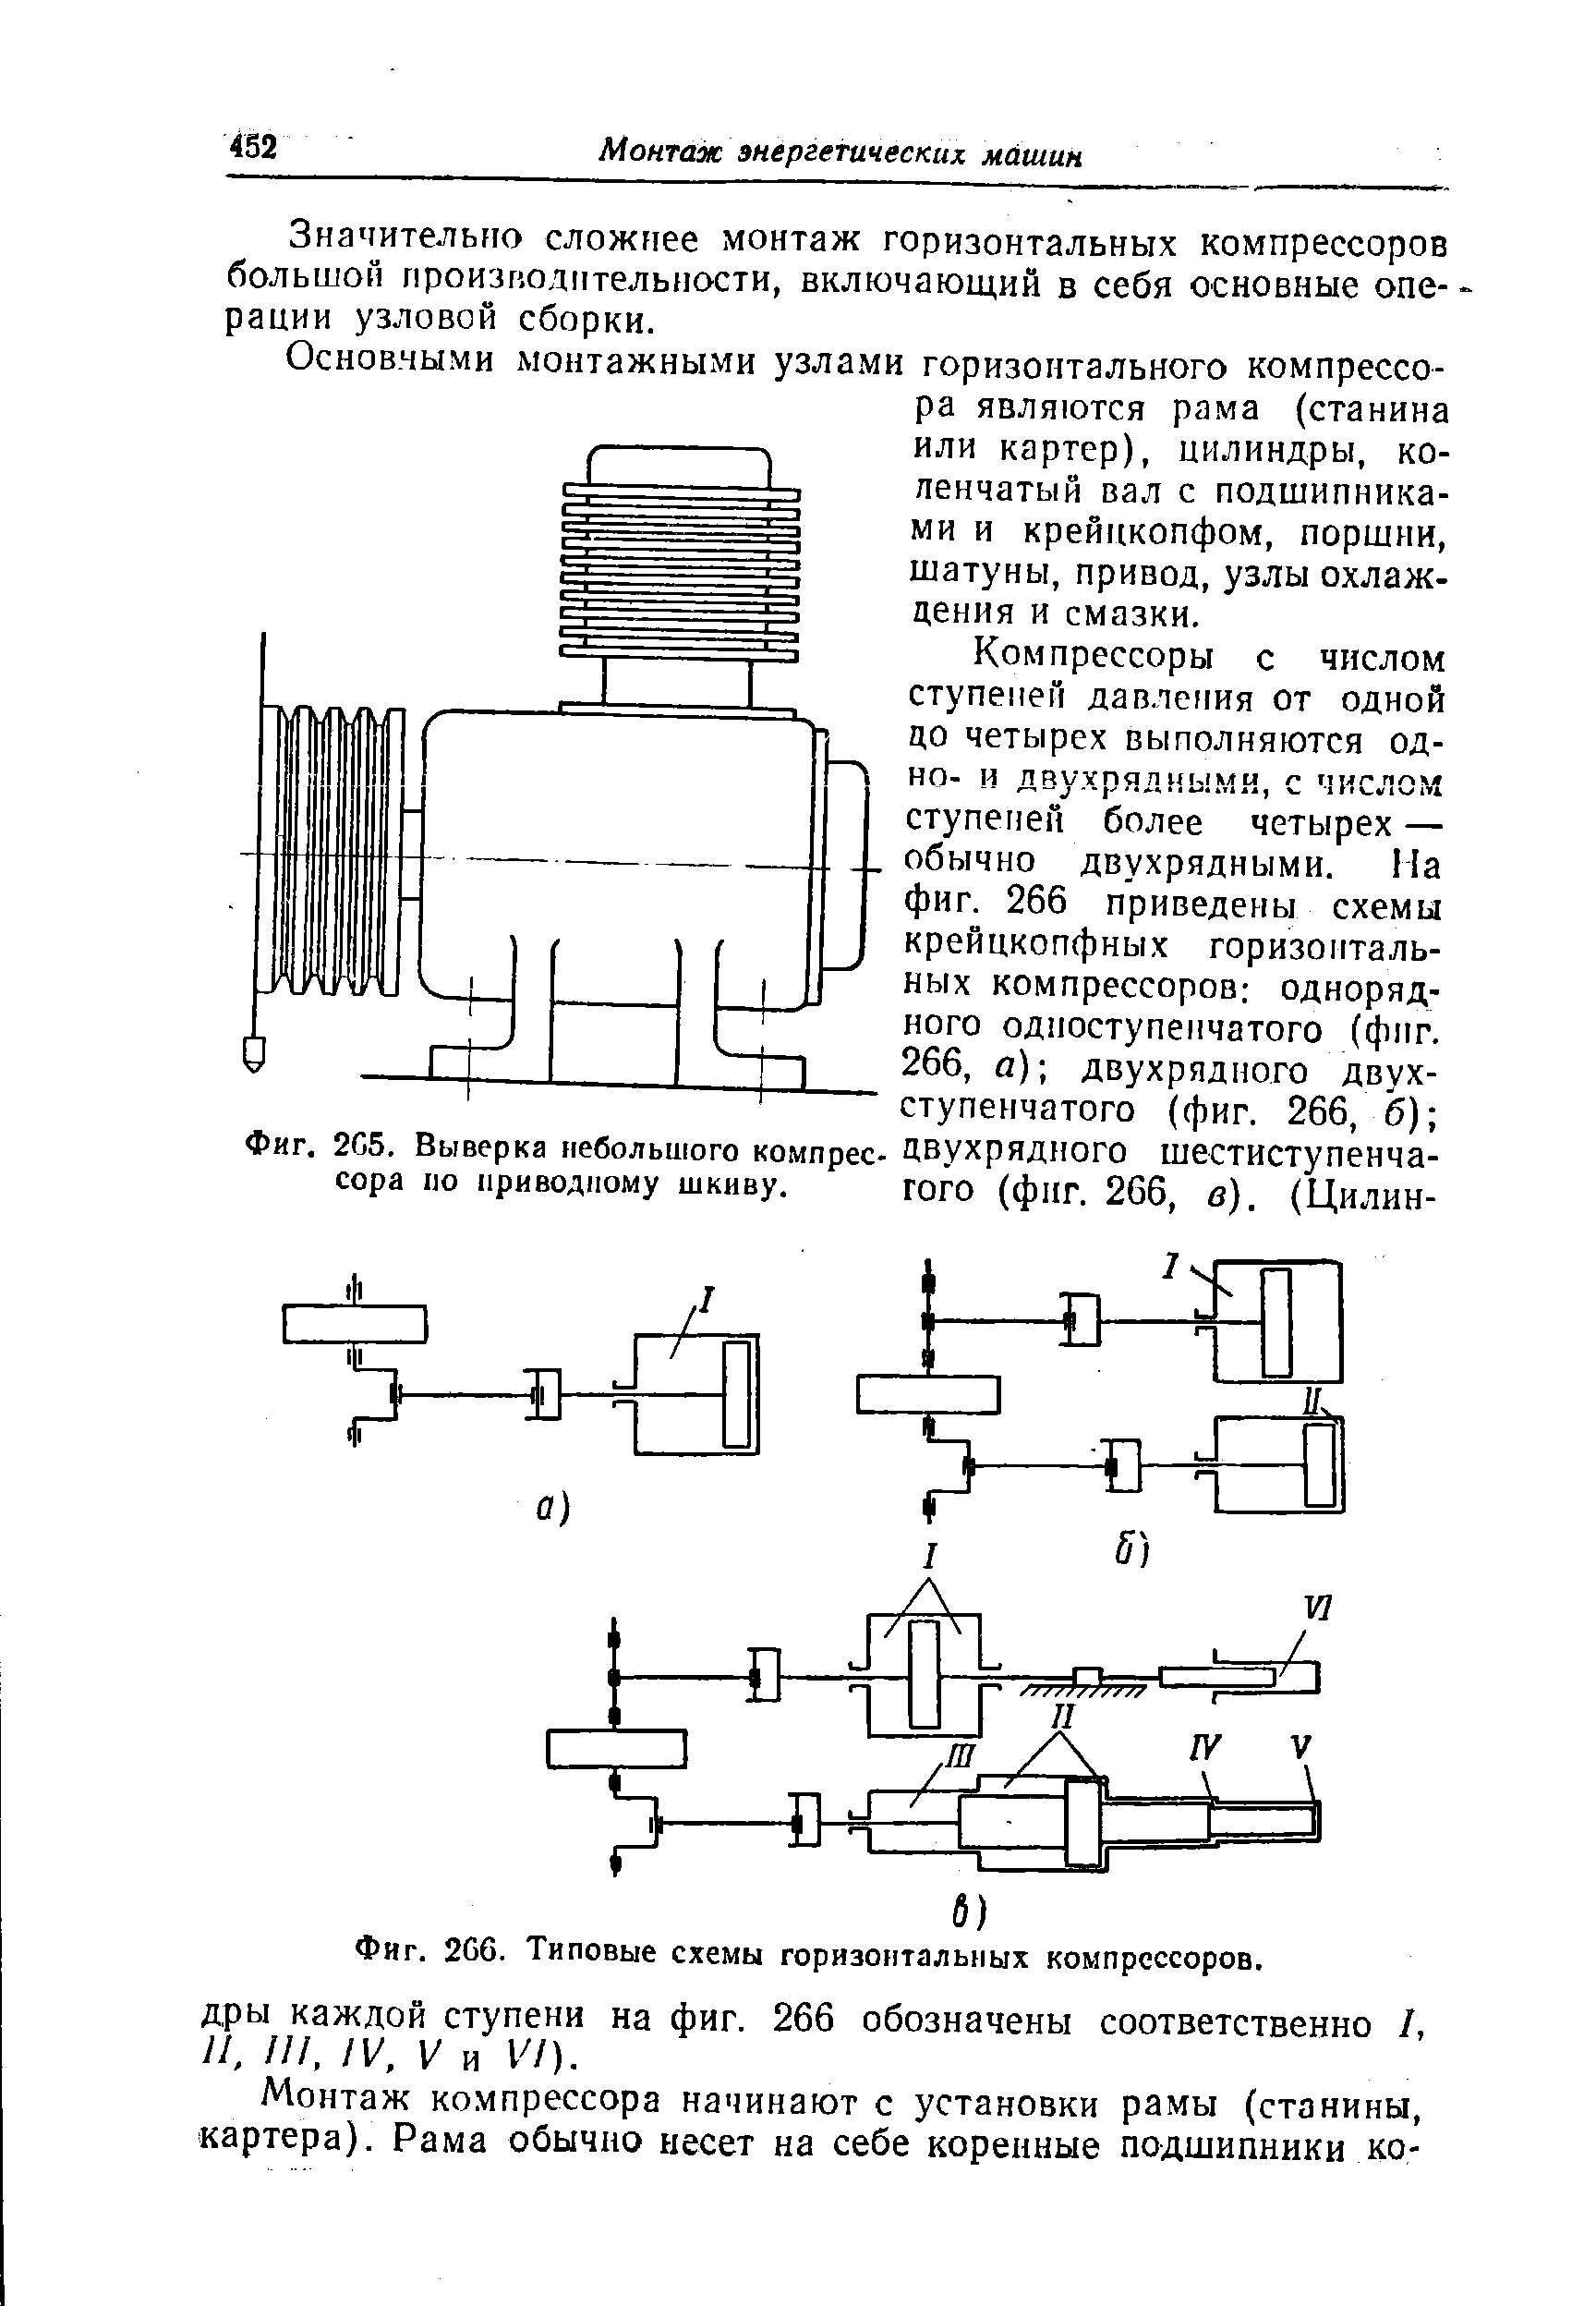 Фиг. 2G6. Типовые схемы горизонтальных компрессоров.
